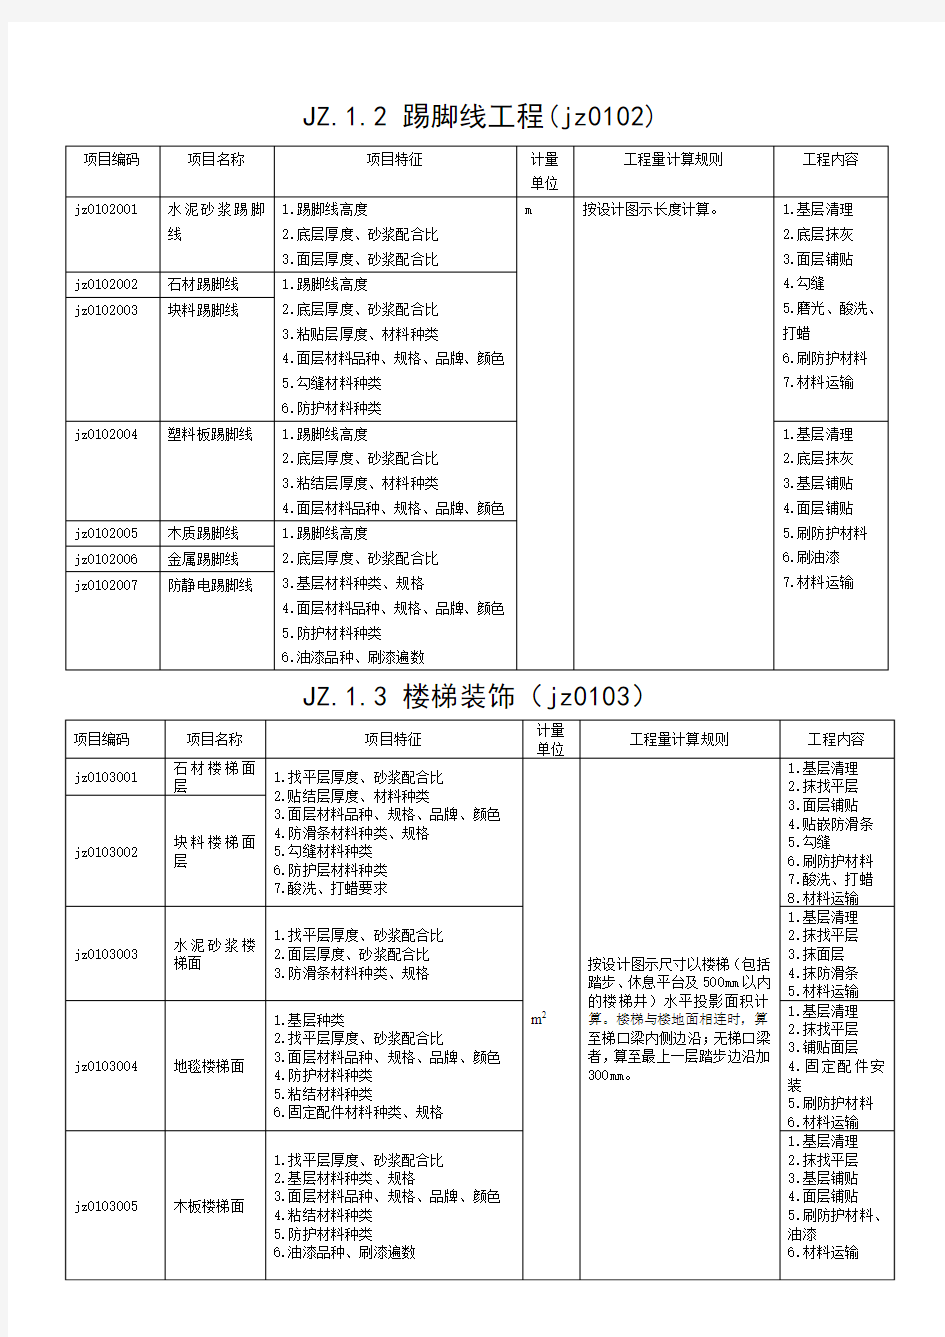 武汉市住宅室内装饰装修工程工程量清单项目及计算规则